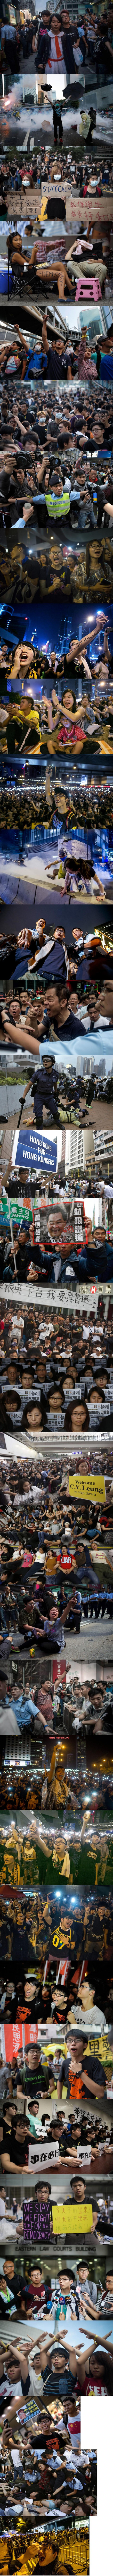 홍콩 시위 현장